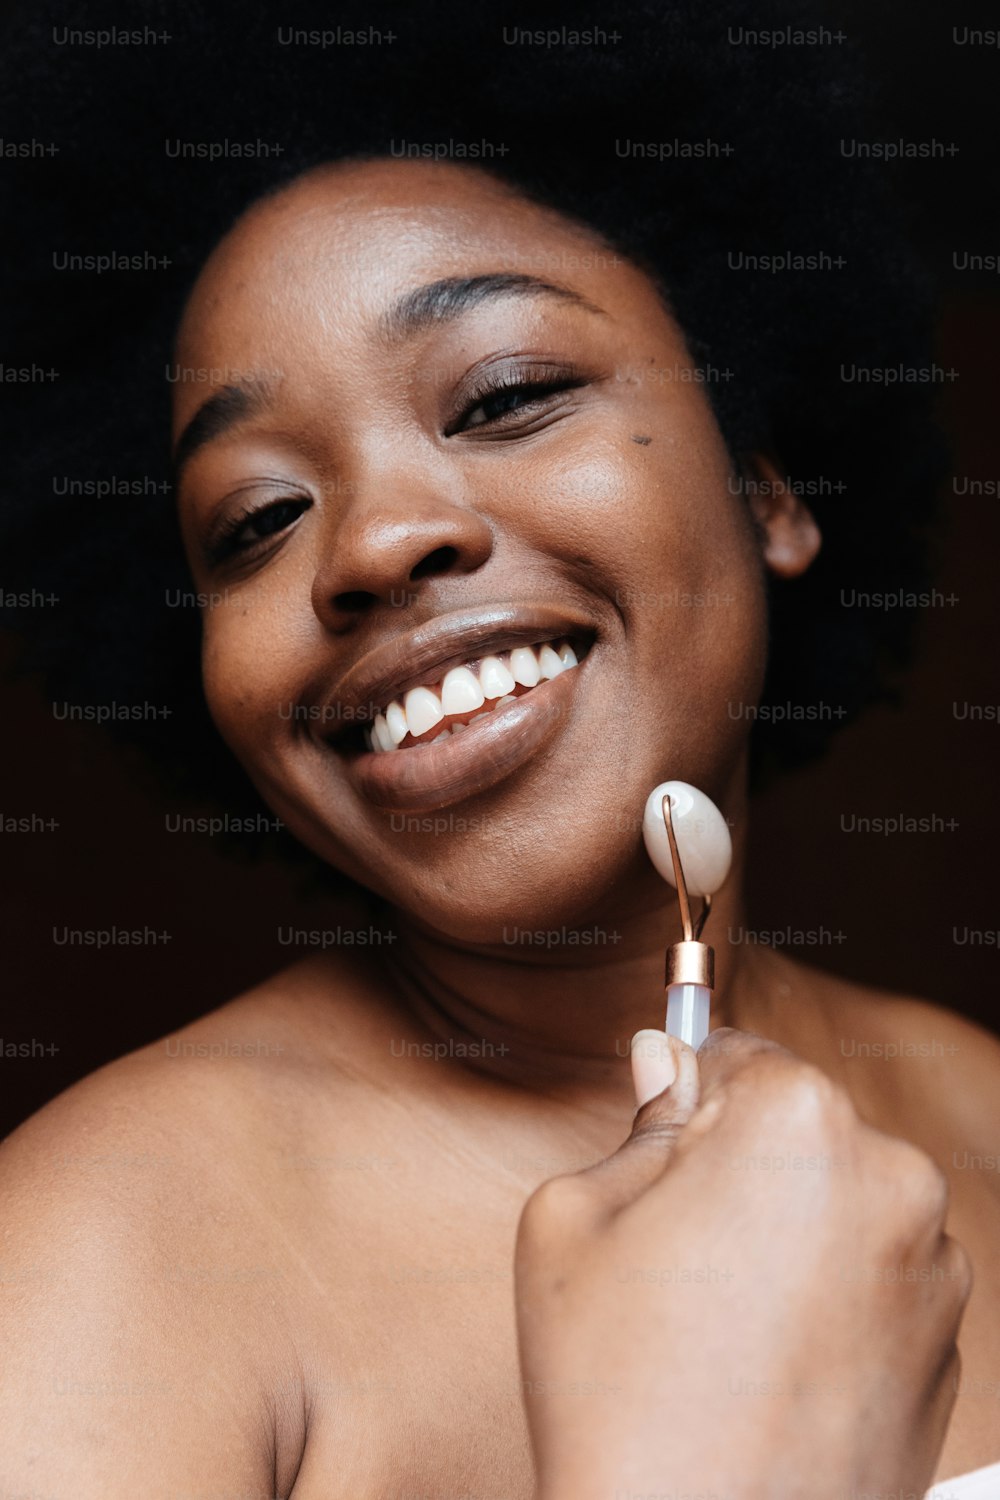 Una mujer sonríe mientras sostiene un cepillo de dientes